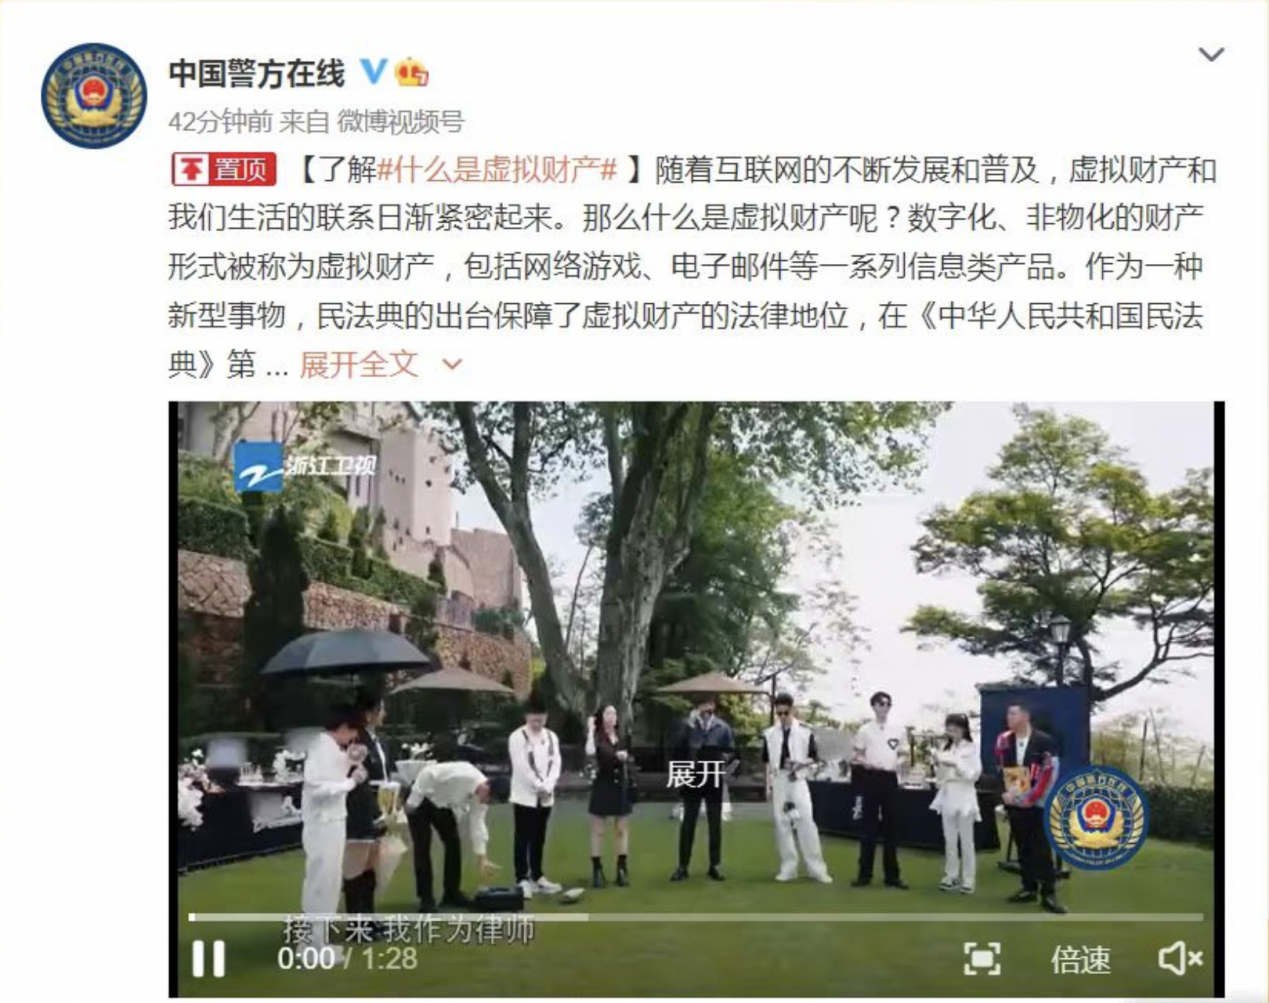 中国警方在线发博肯定！《奔跑吧》第十季聚焦虚拟财产安全保护